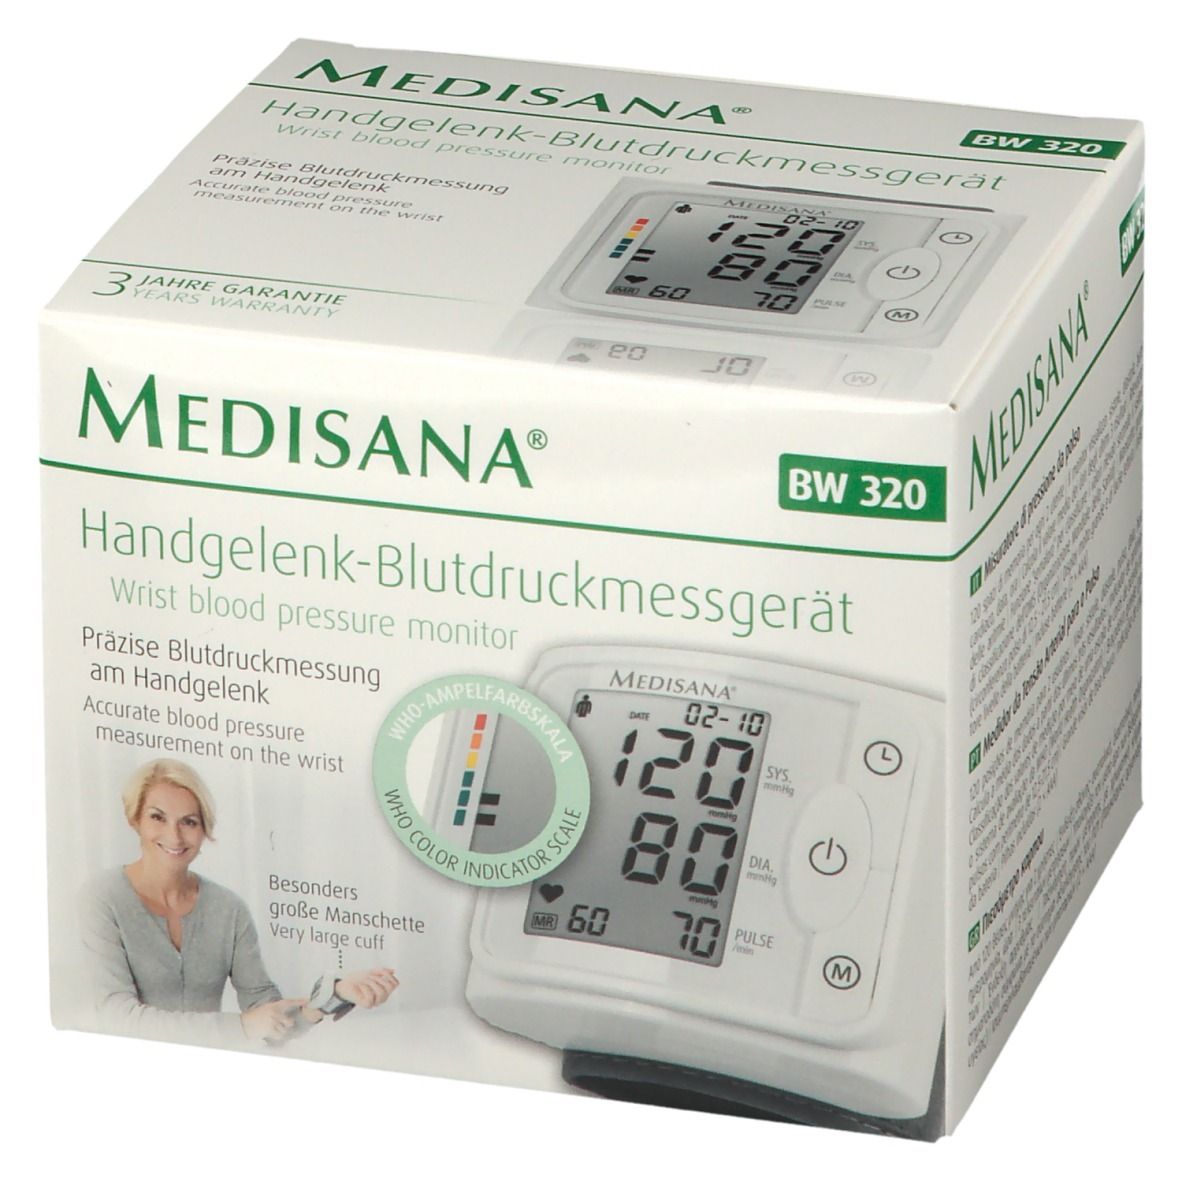 Medisana Handgelenk-Blutdruckmessgerät BW 320 1 St - Redcare Apotheke